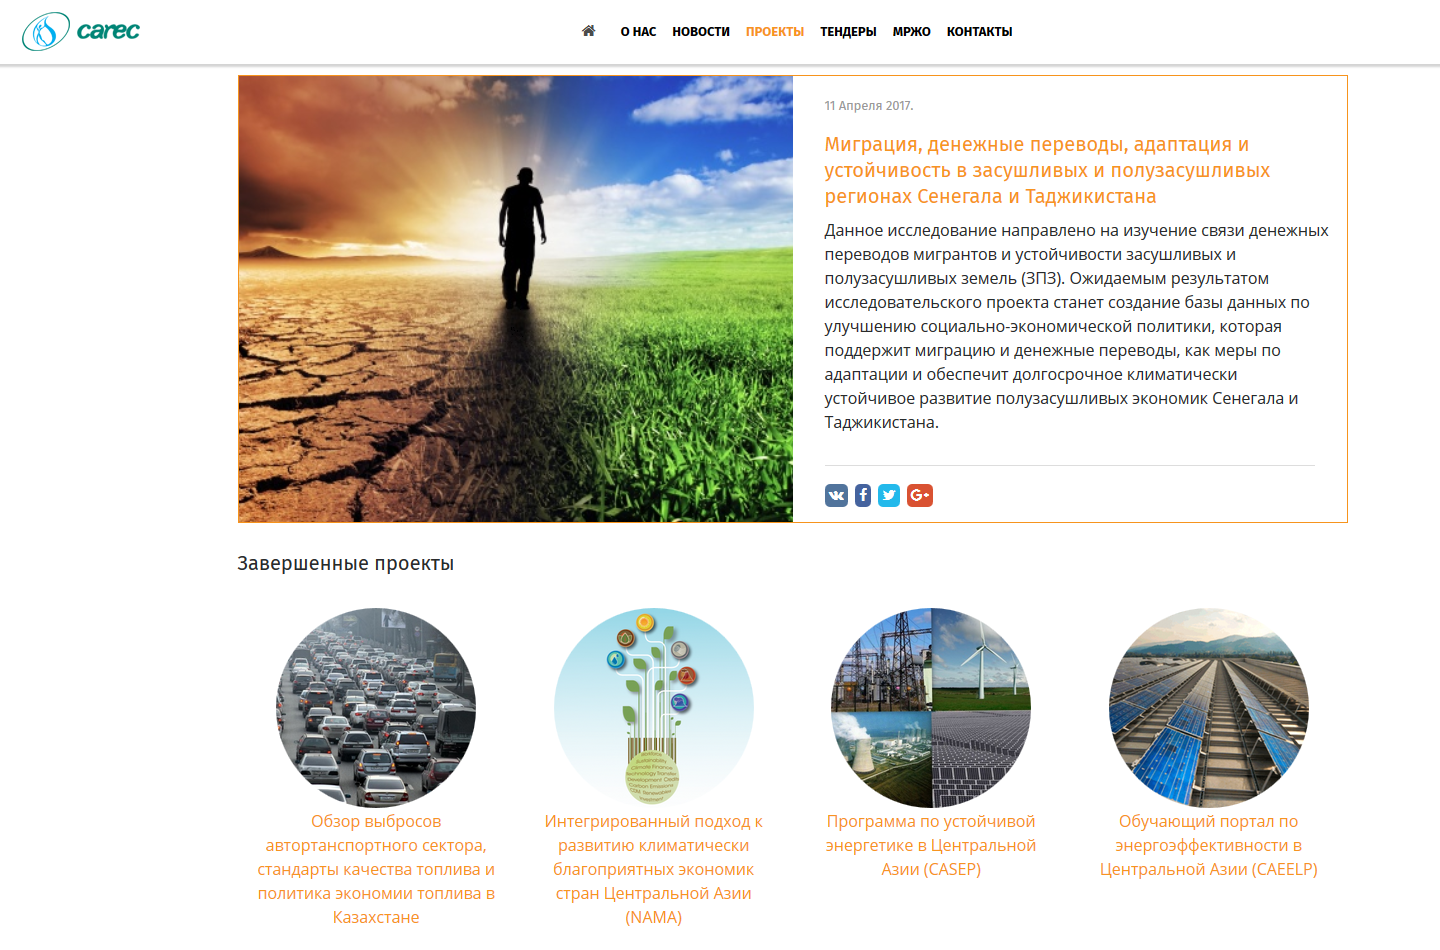 информационный сайт по адаптации к изменению климата и смягчению его последствий в центральной азии